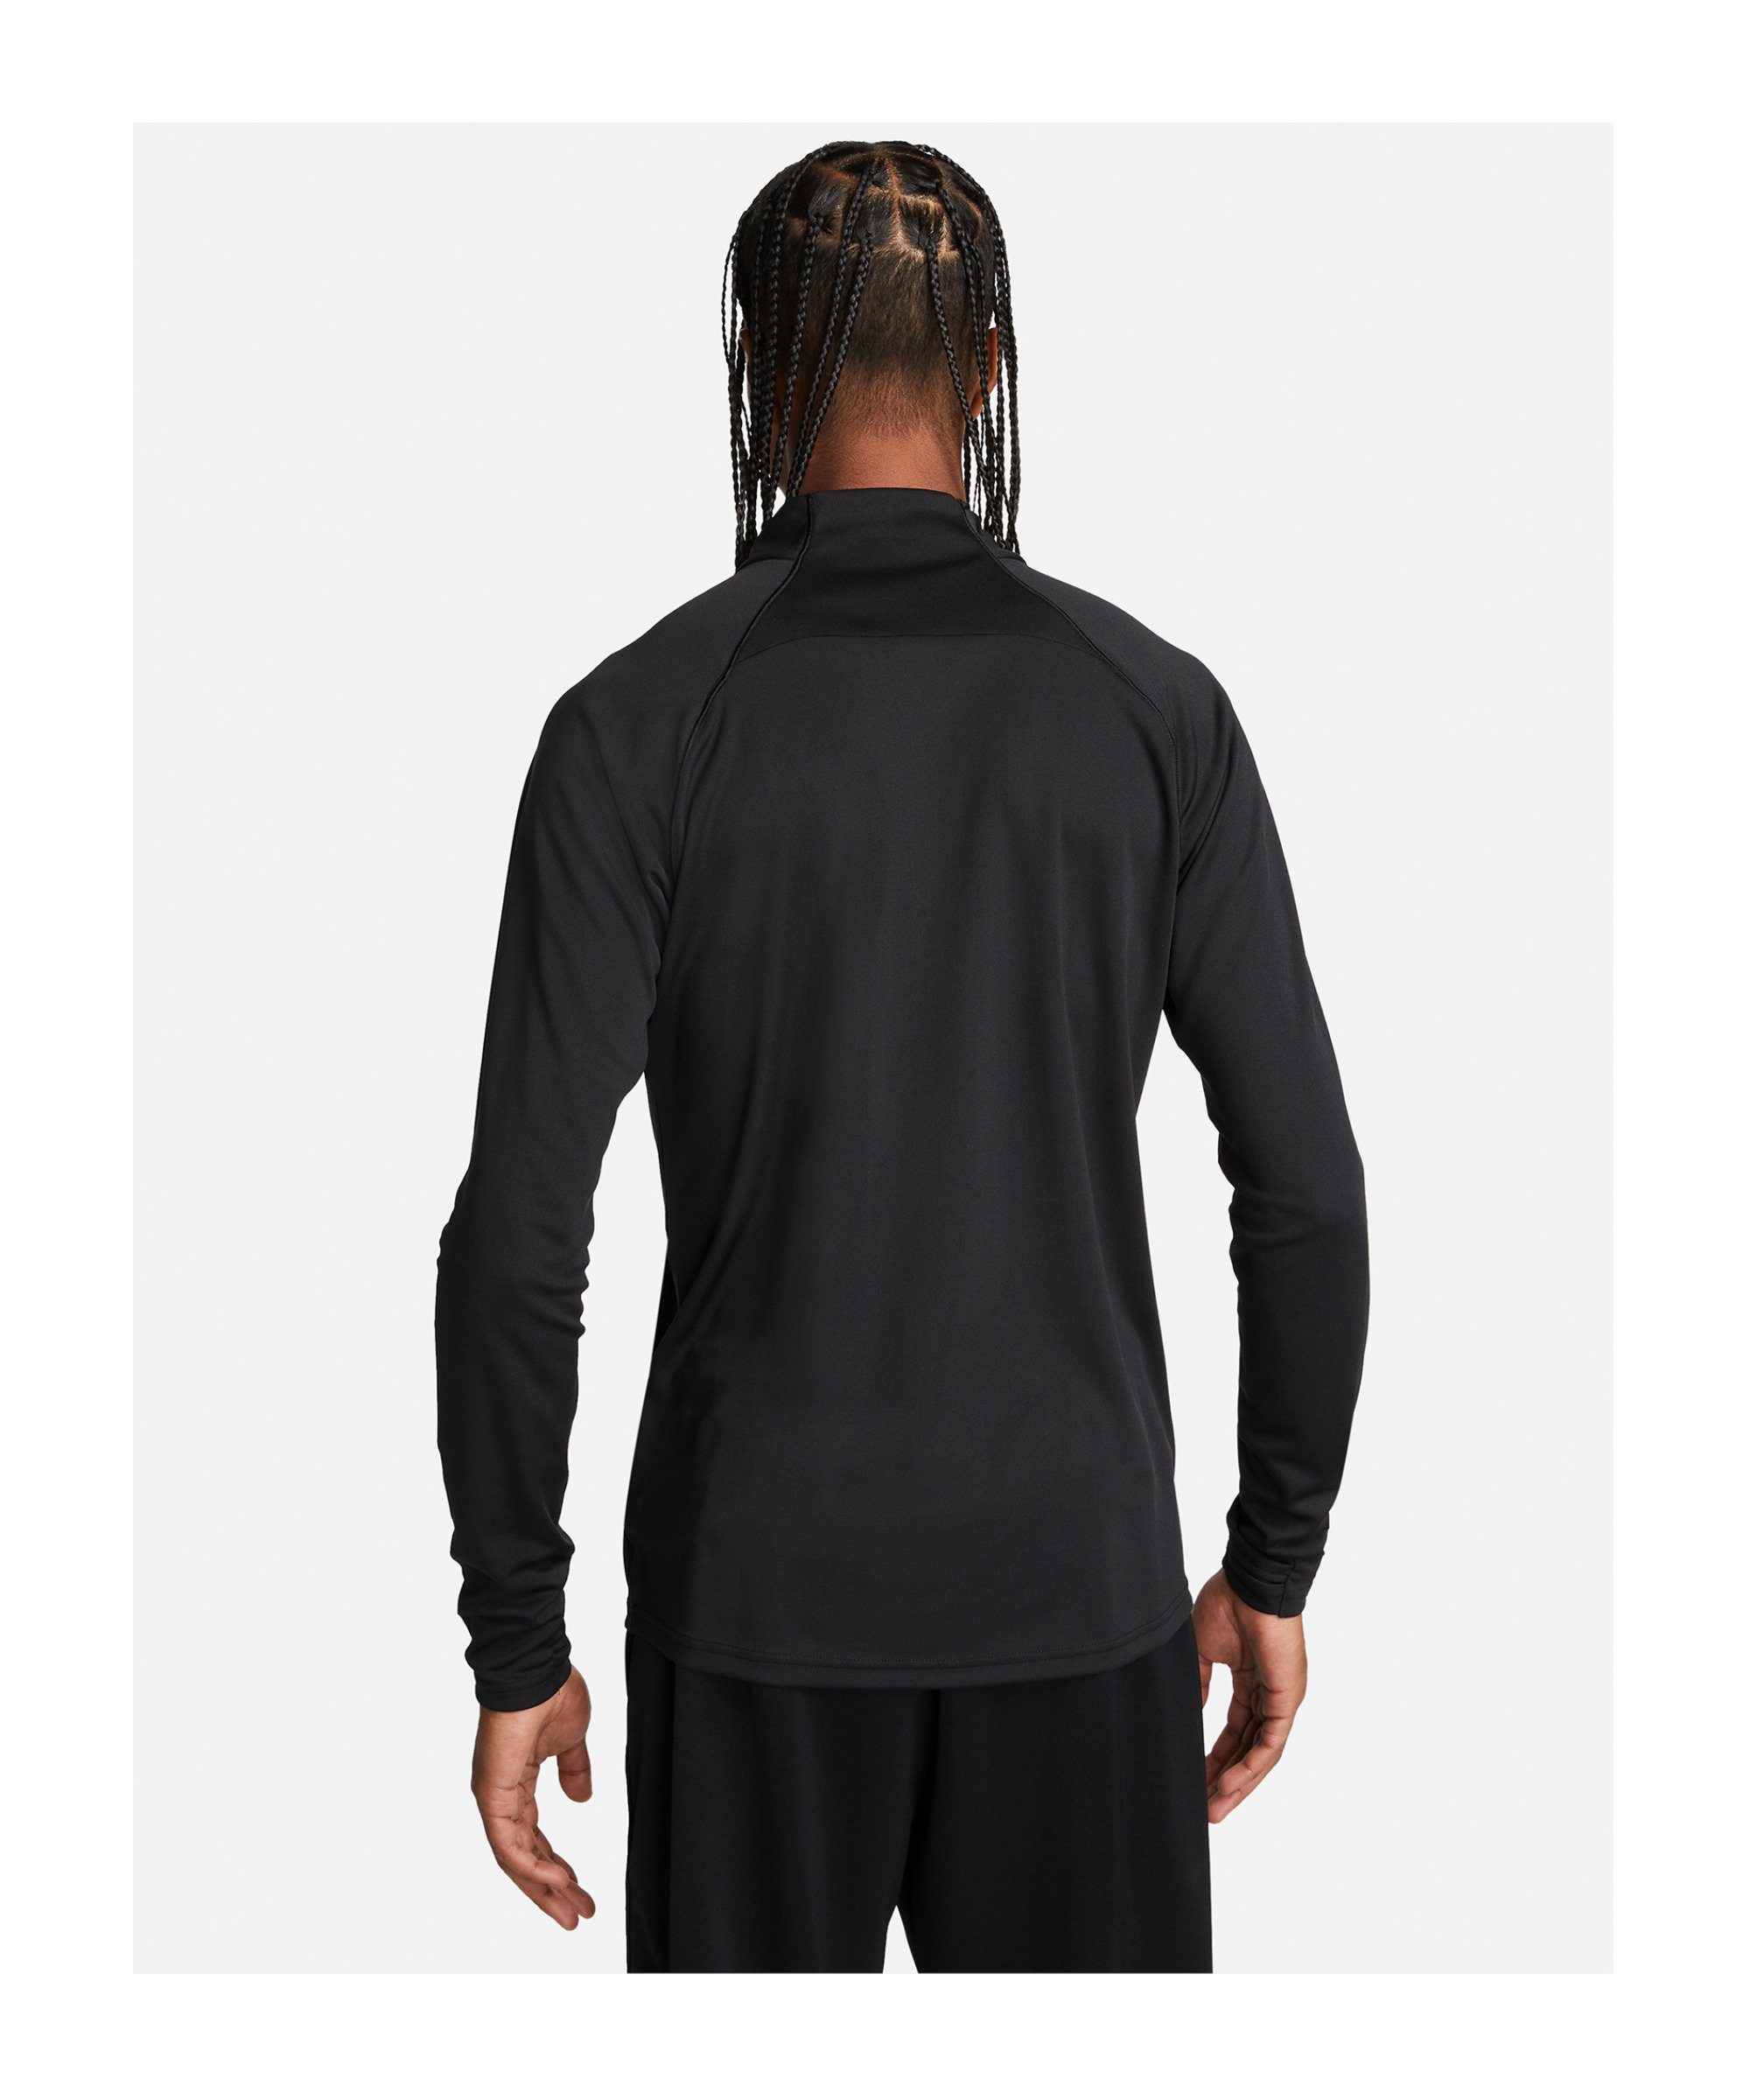 Nike Sportswear Sweatshirt PK schwarzweiss Sweatshirt Air